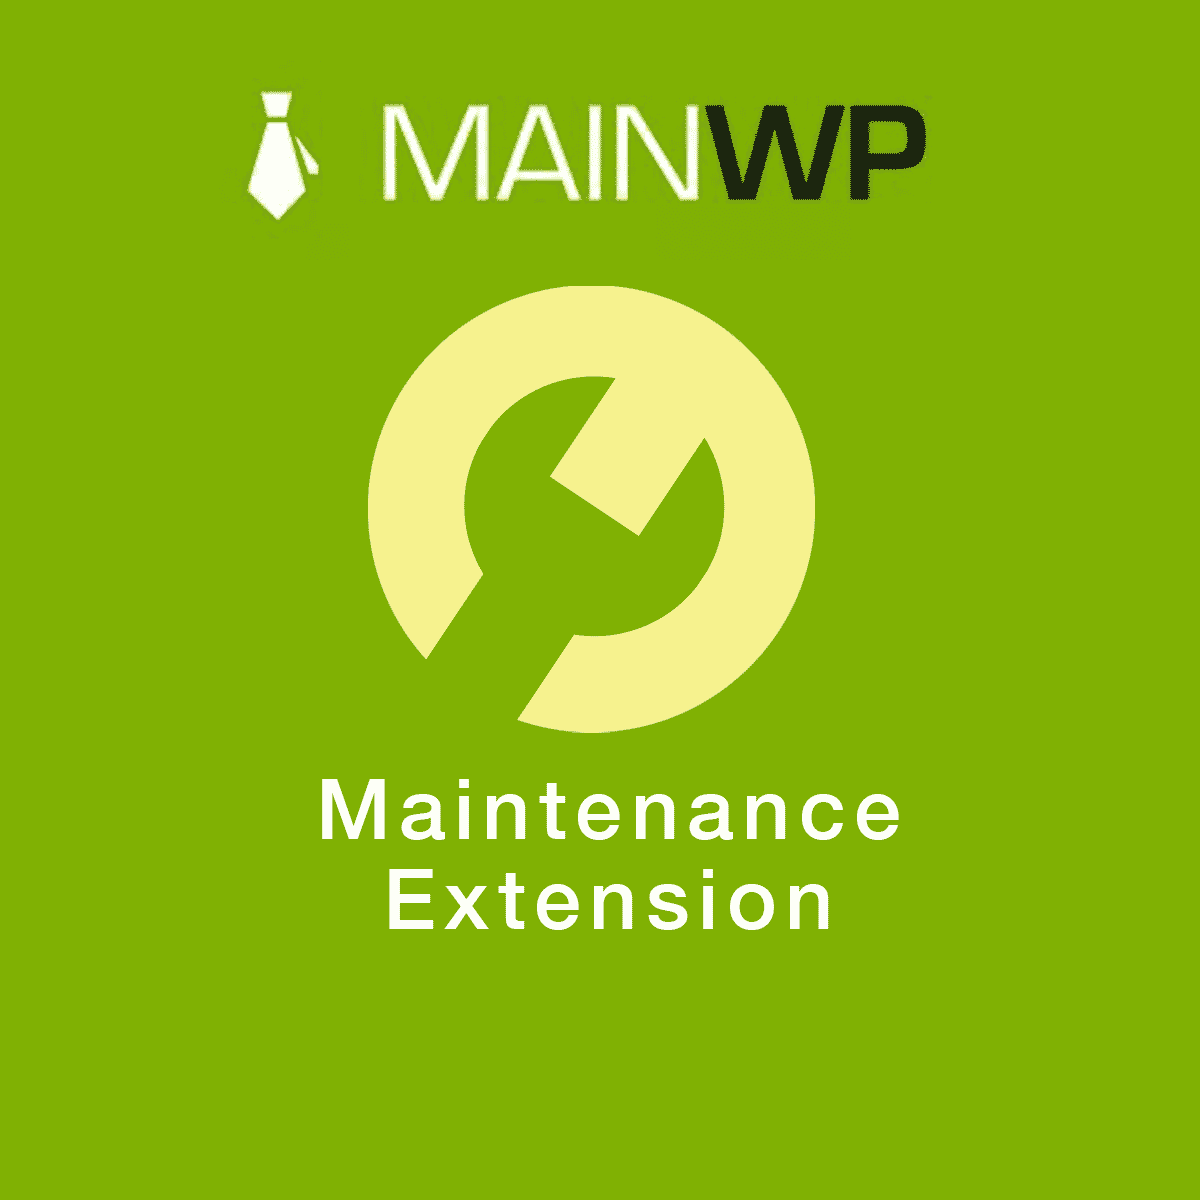 دانلود افزونه وردپرس MainWP Maintenance